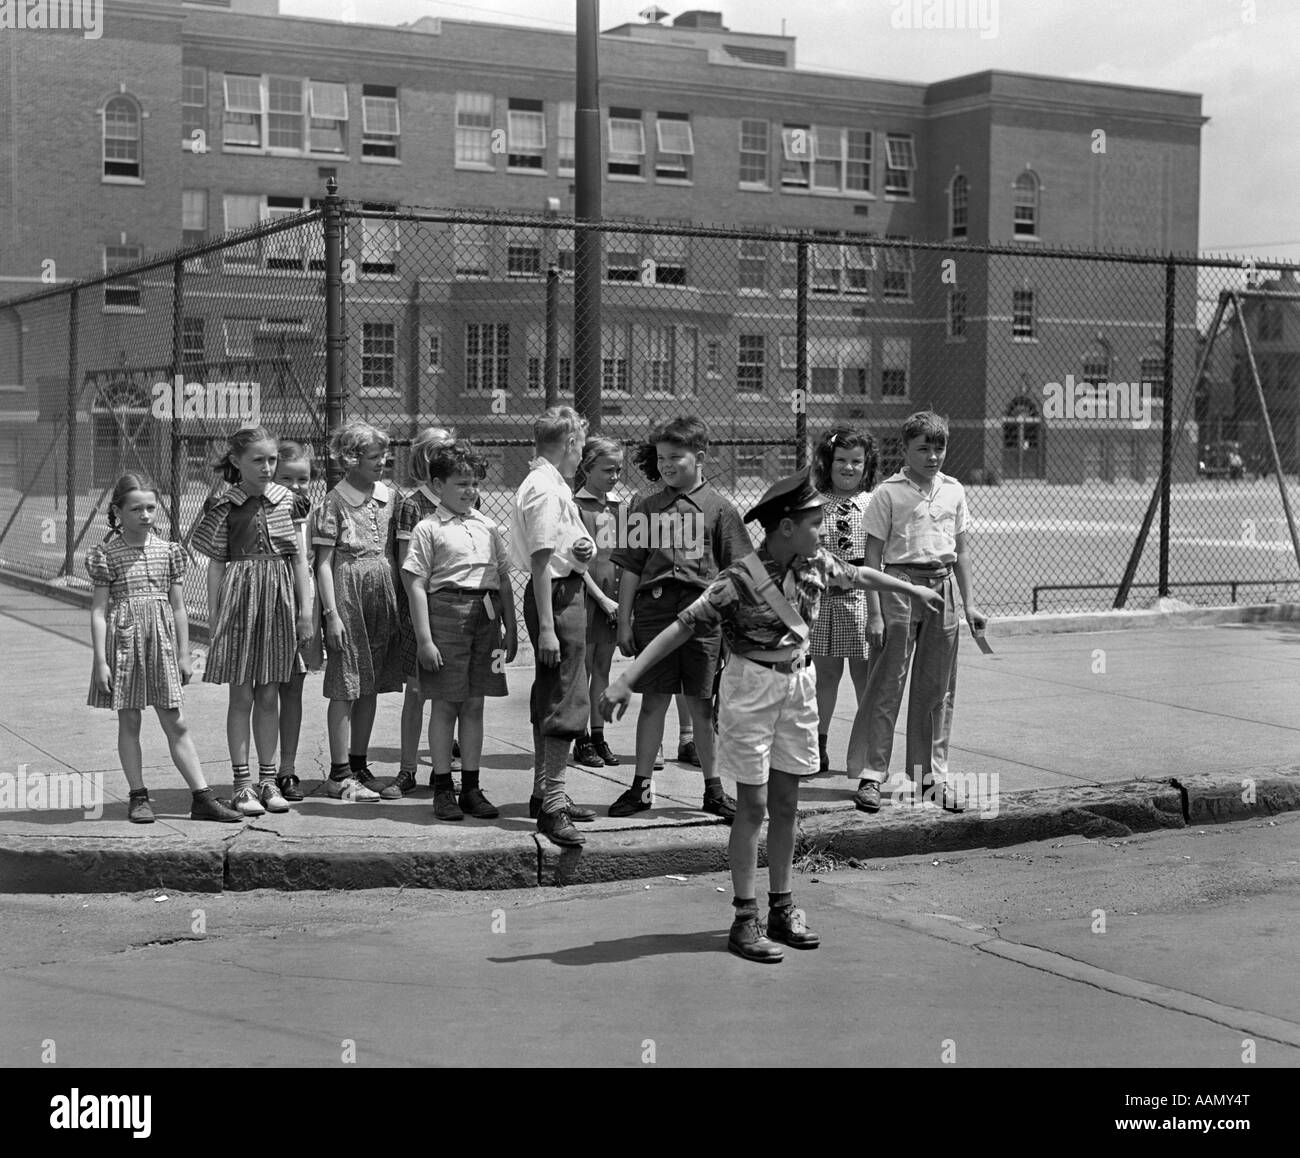 1930s PATERSON NJ BOY CROSSING GUARD HOLDING gruppo posteriore del gli studenti della scuola elementare in attesa al cordolo di Cross Street Foto Stock